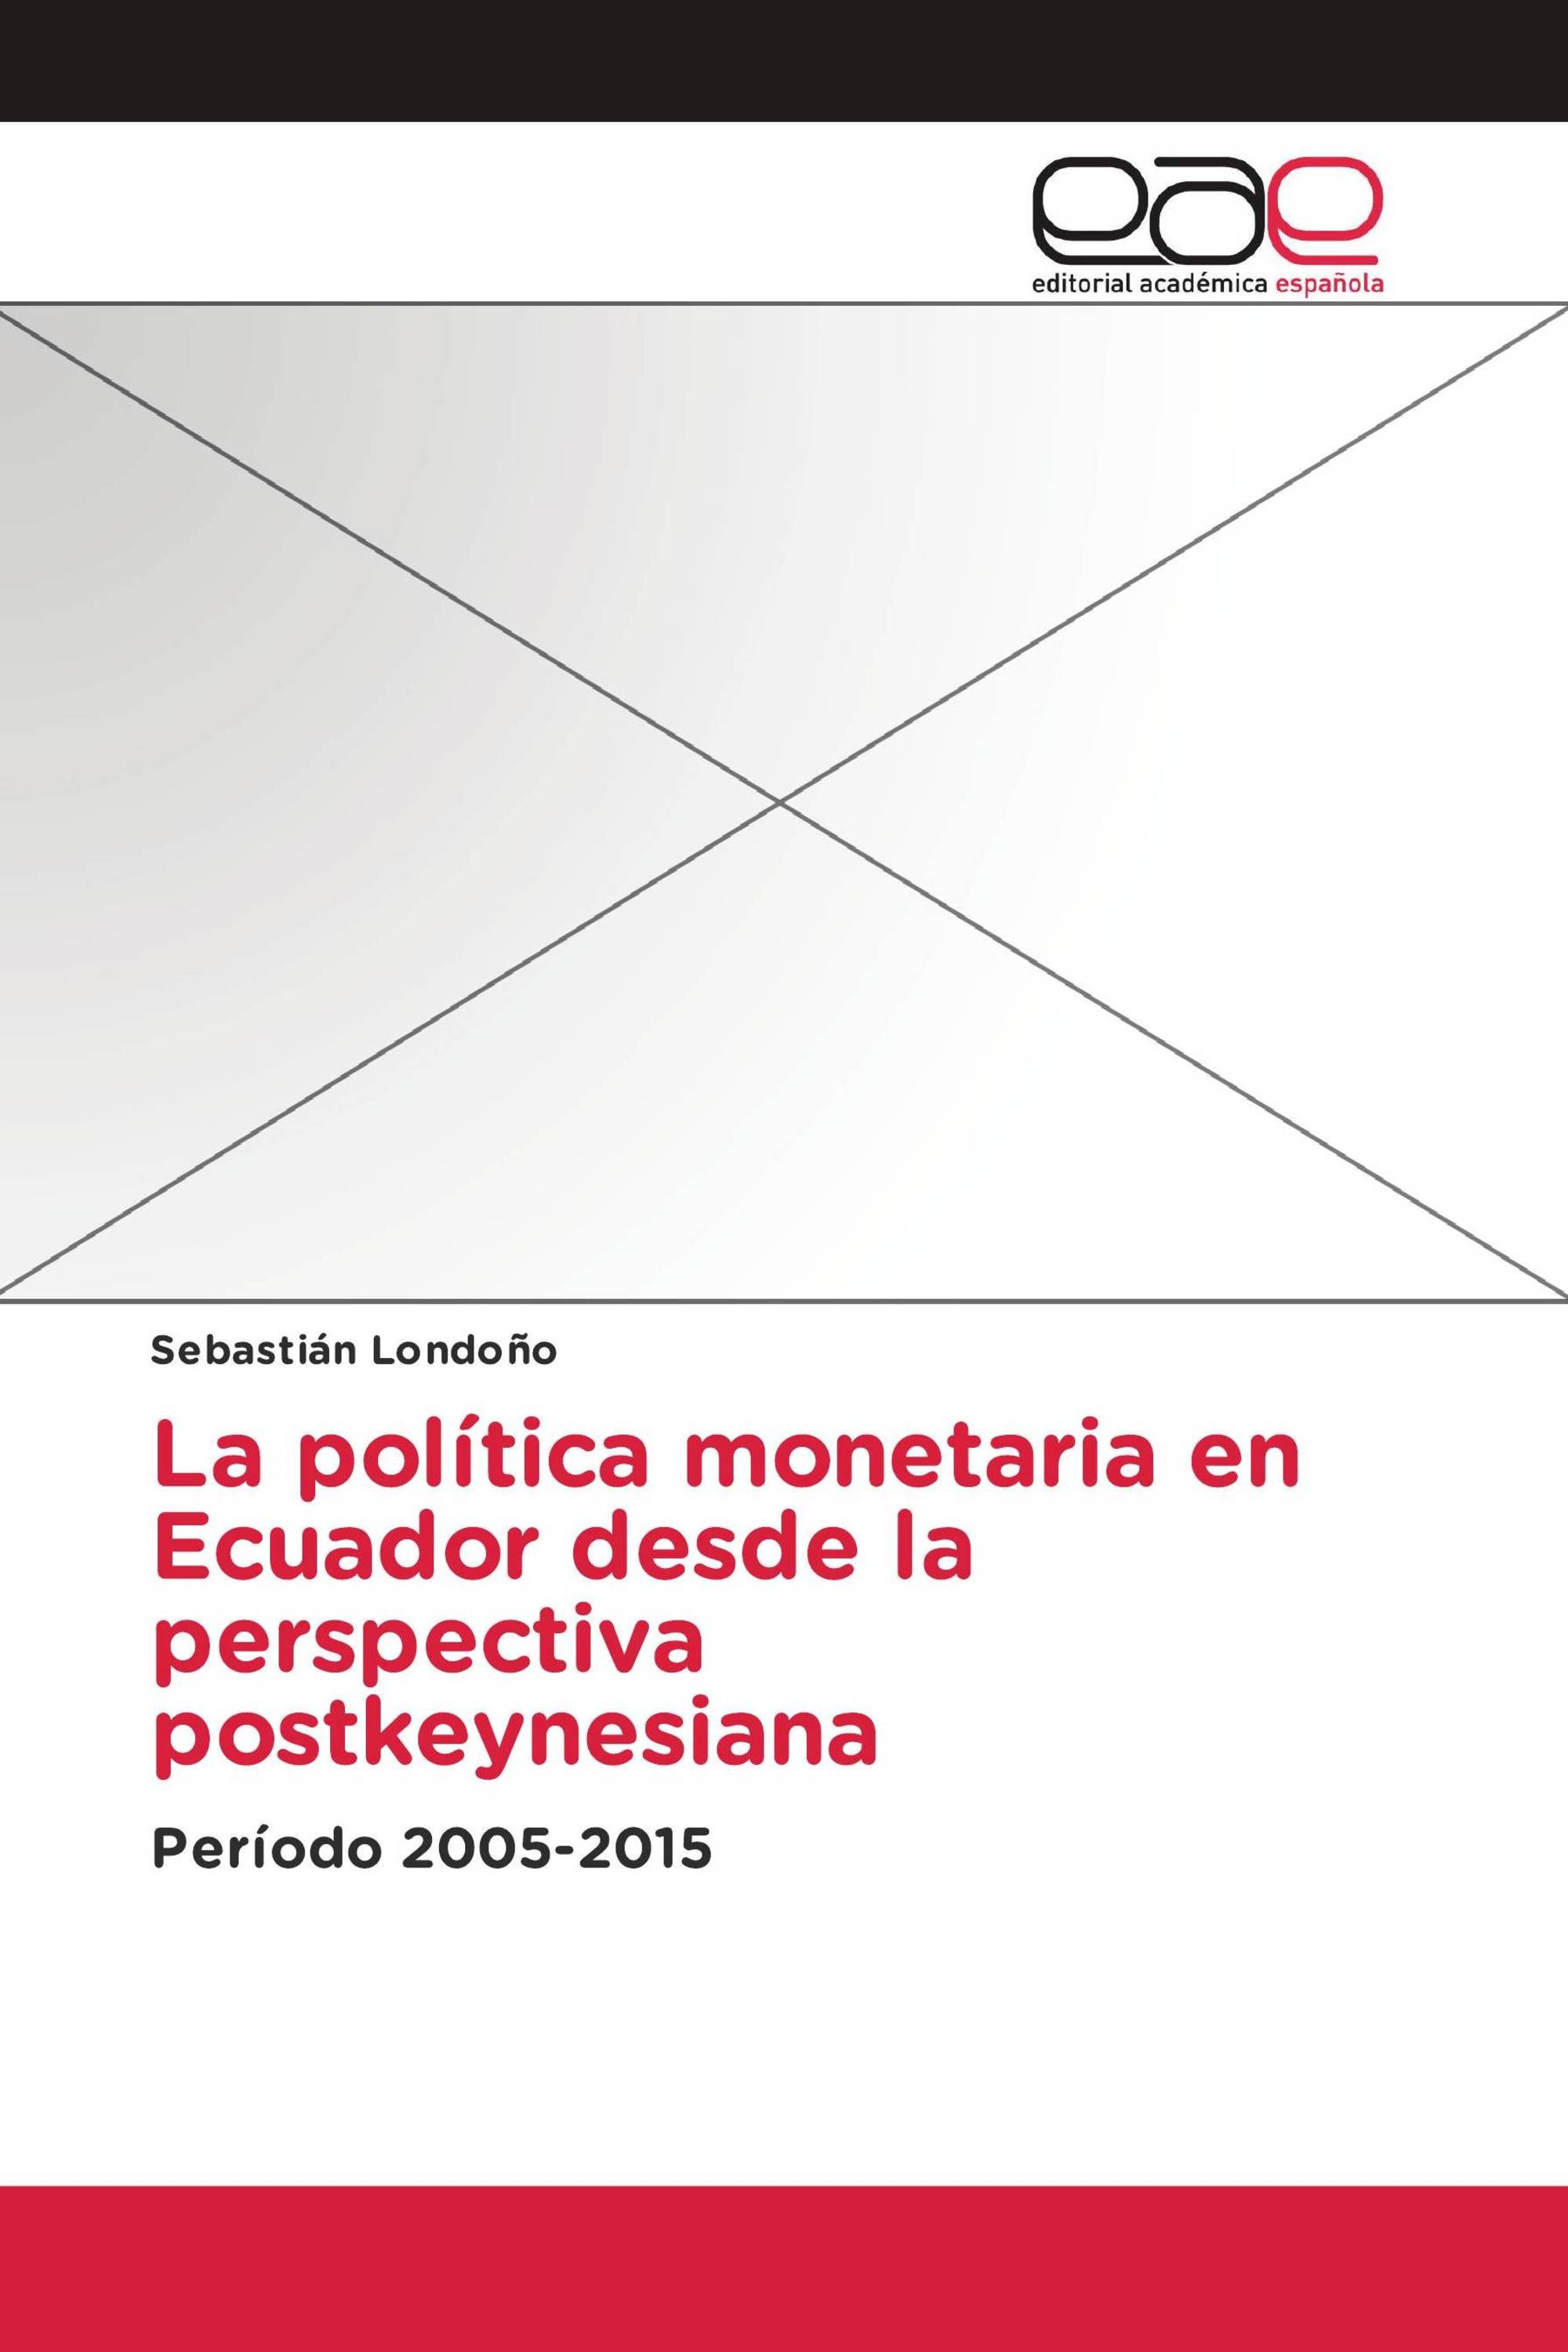 La política monetaria en Ecuador desde la perspectiva postkeynesiana